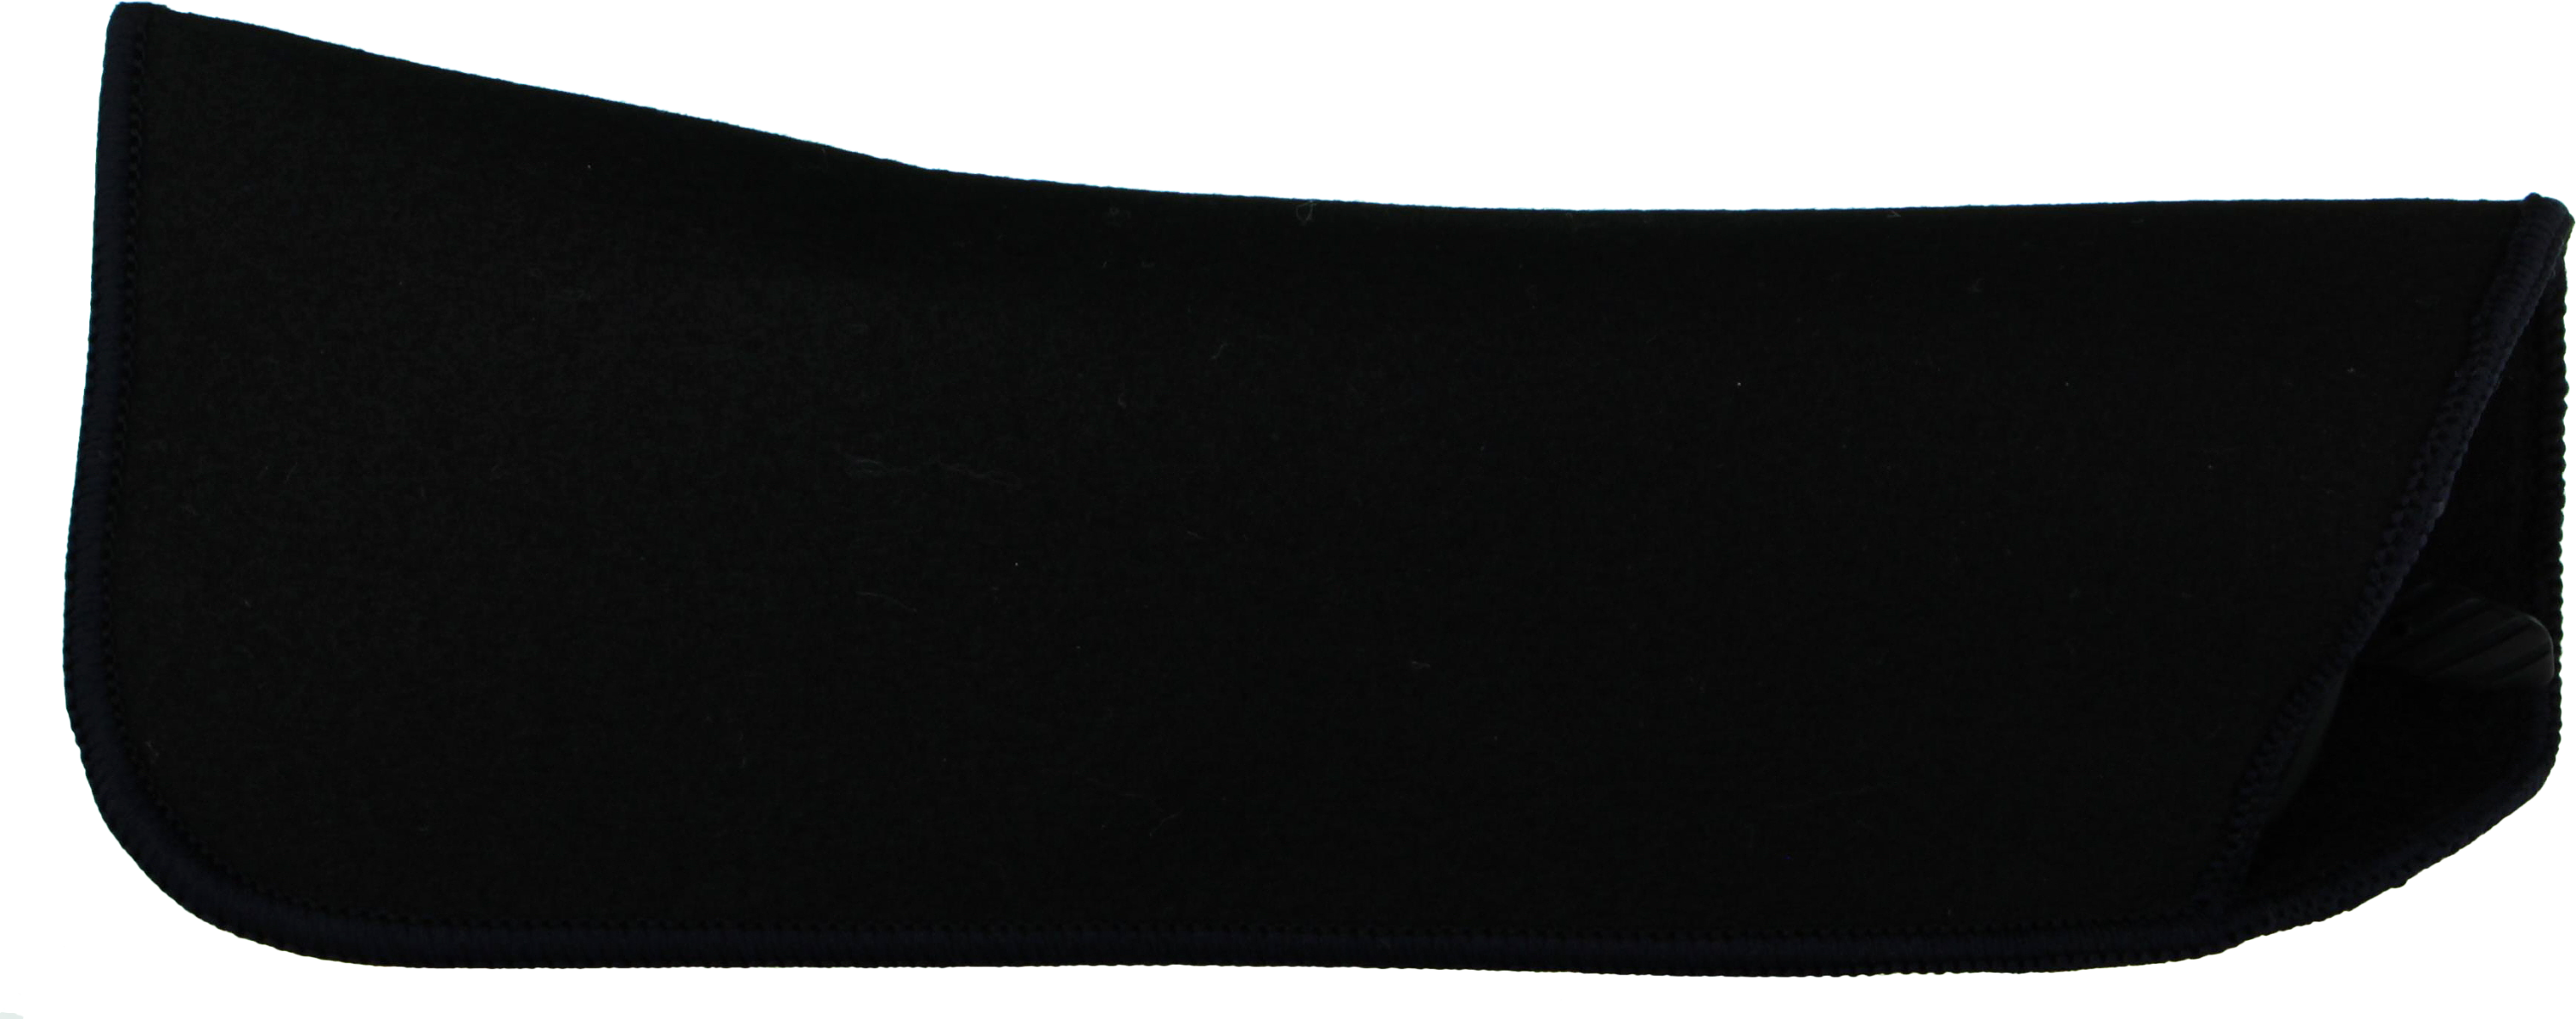 Das Bild zeigt ein rechteckiges Brillenetui in schwarz.